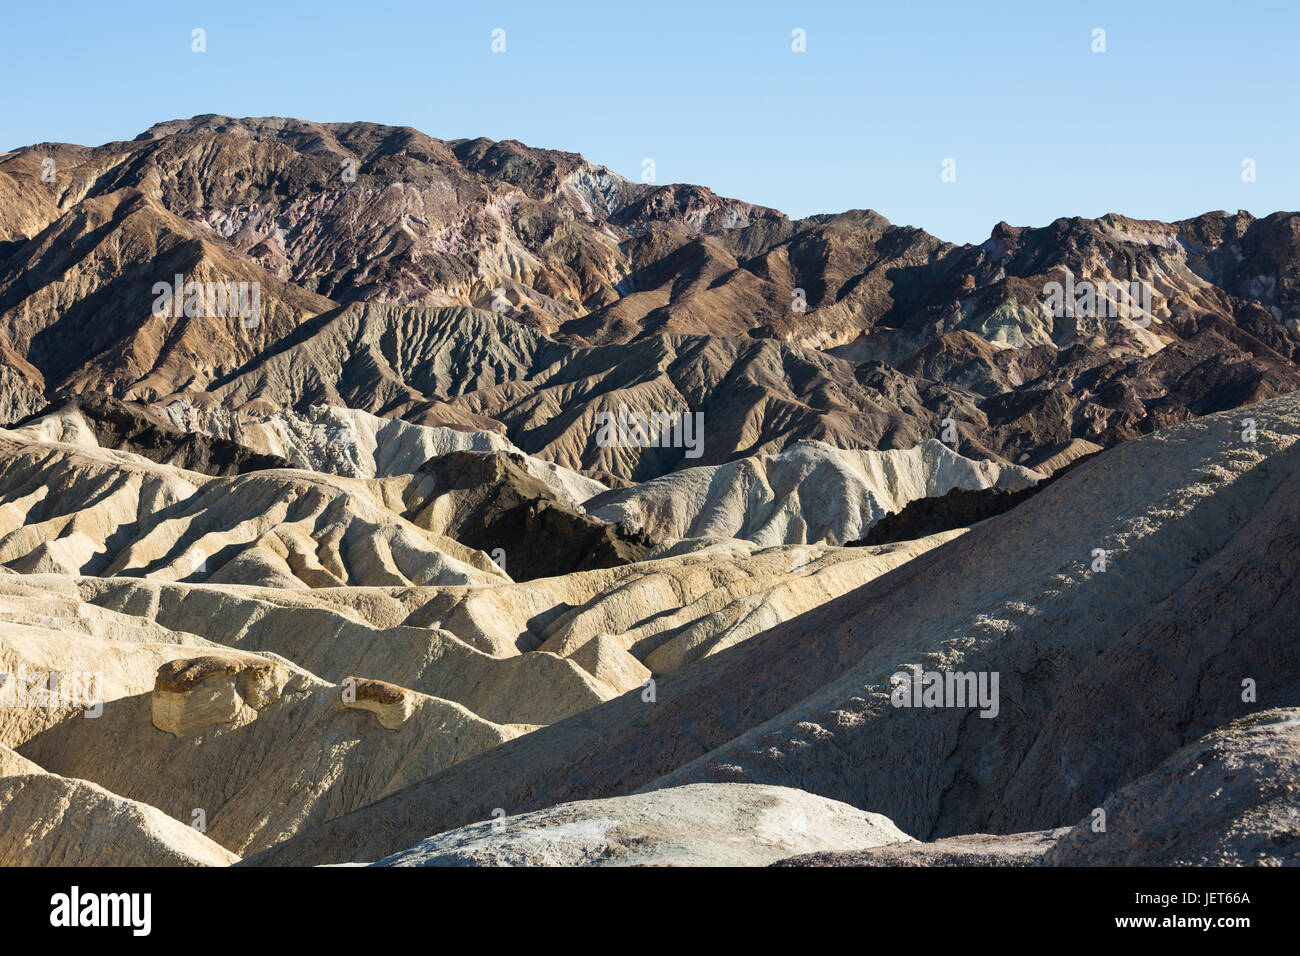 USA, Californie, la Vallée de la mort est une vallée désertique située dans l'est de la Californie. C'est la région la plus basse, la plus sèche et la plus chaude d'Amérique du Nord. Point de Zabriskie. Banque D'Images